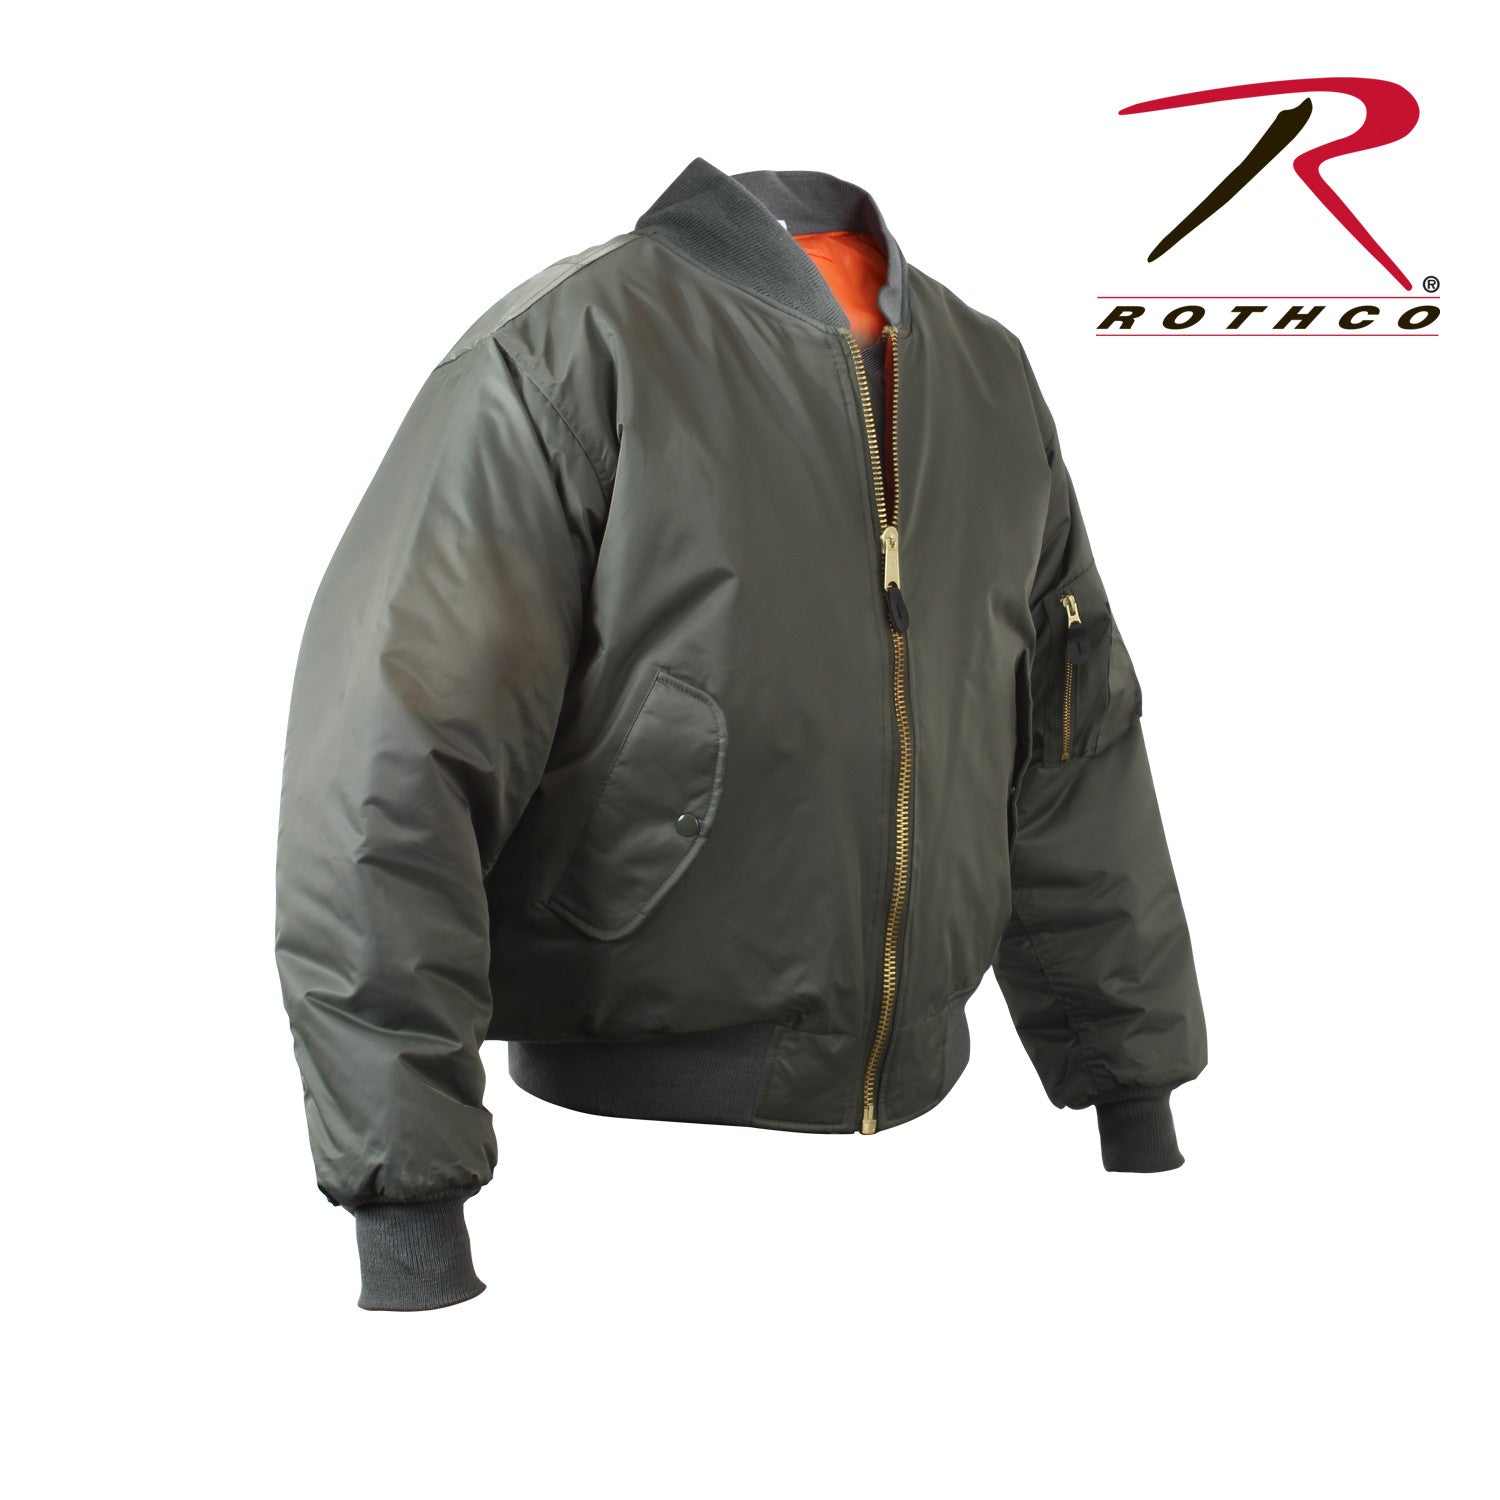 Rothco Ma 1 Flight Jacket Xs 3x Regional Uniform Supply